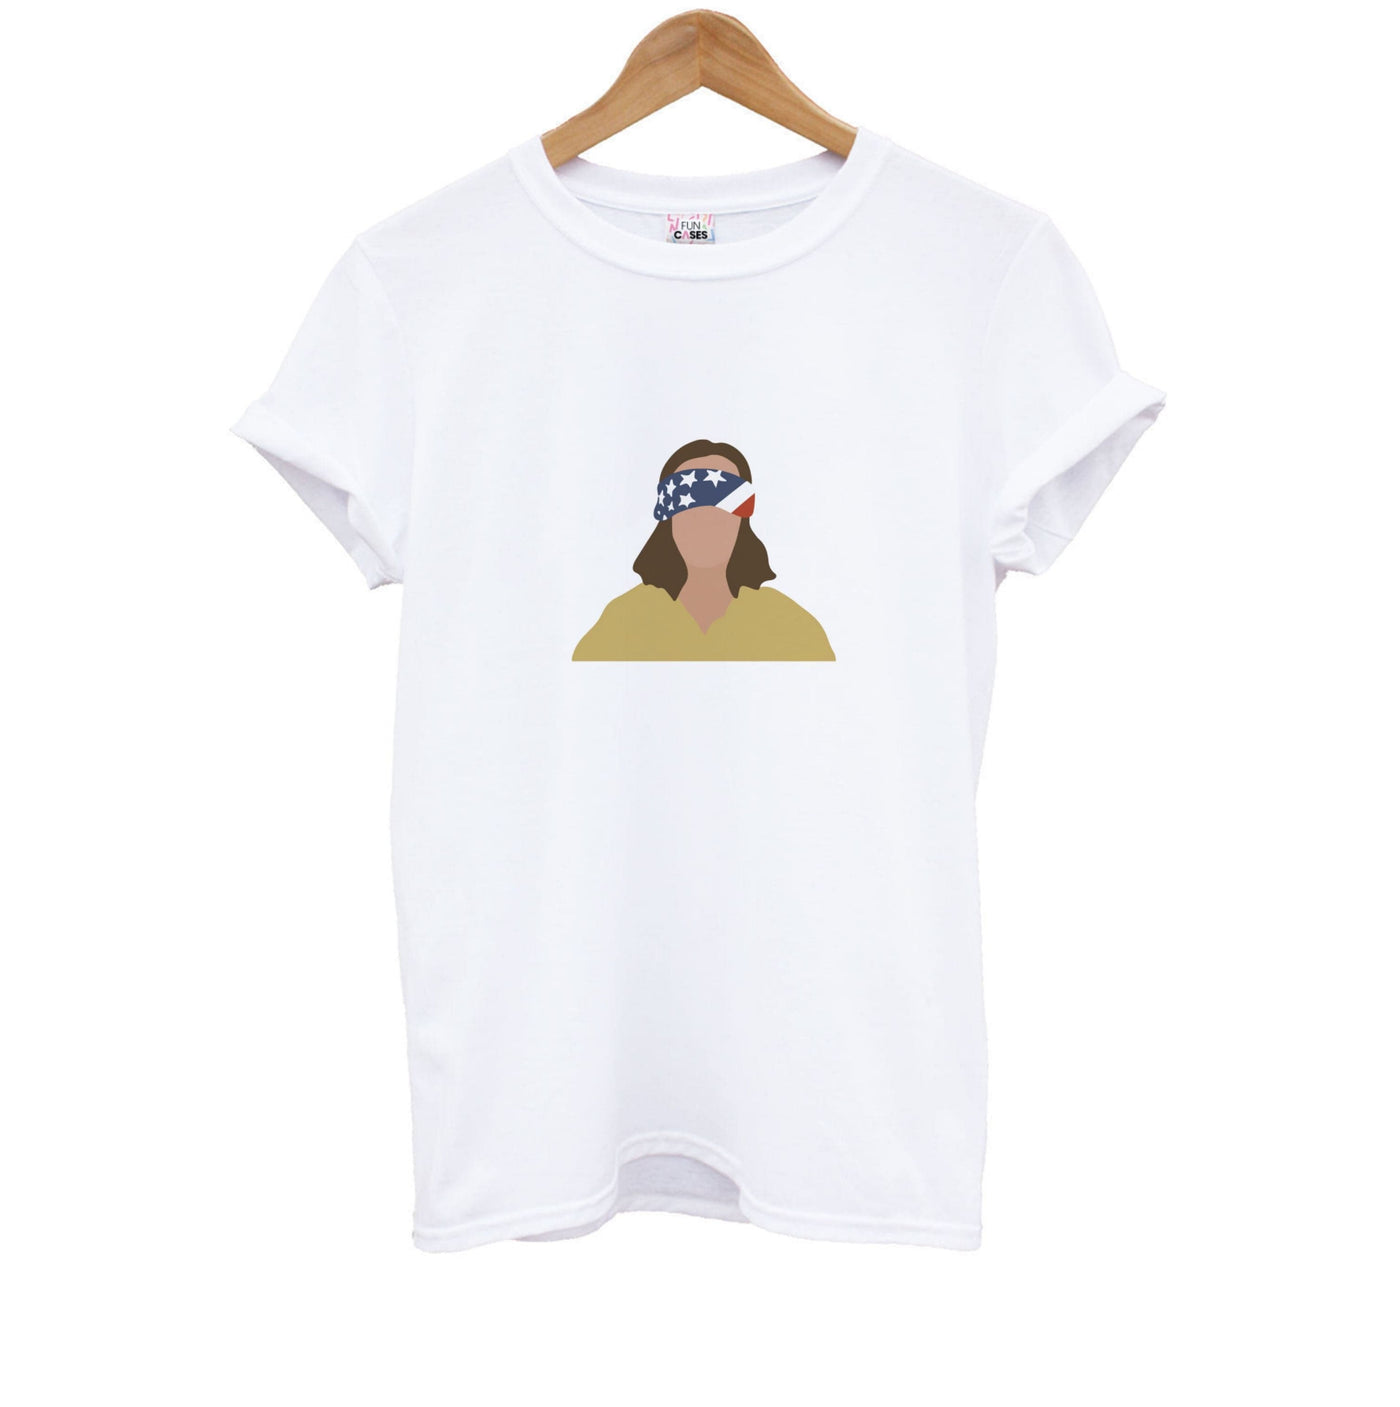 Blindfolded Eleven - Stranger Things Kids T-Shirt